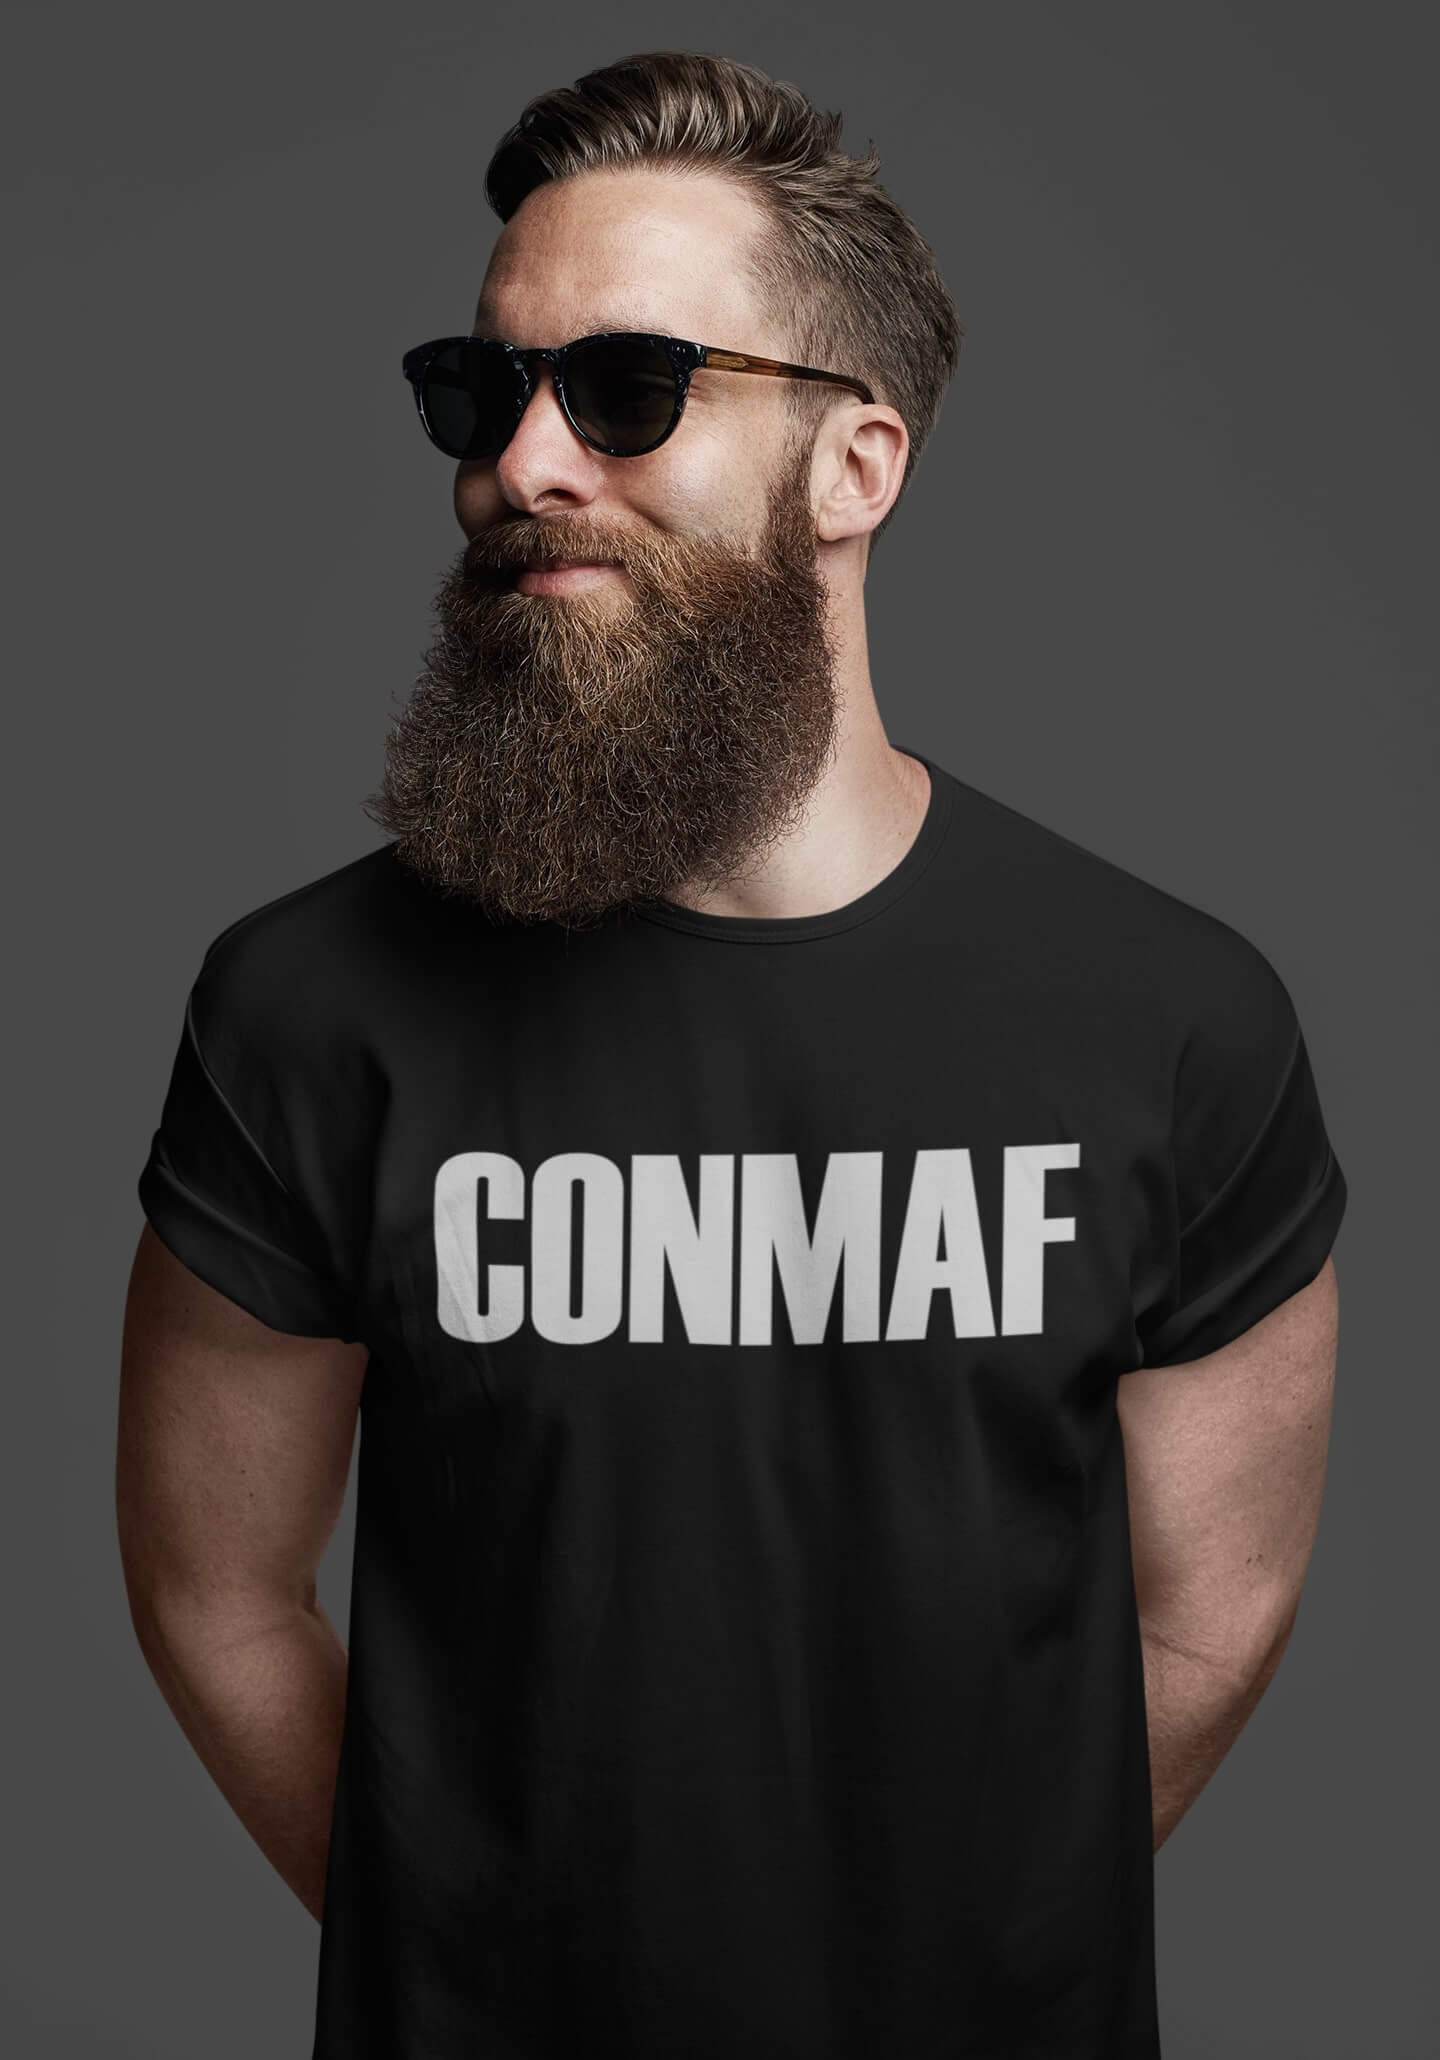 Going Commando | Essential T-Shirt